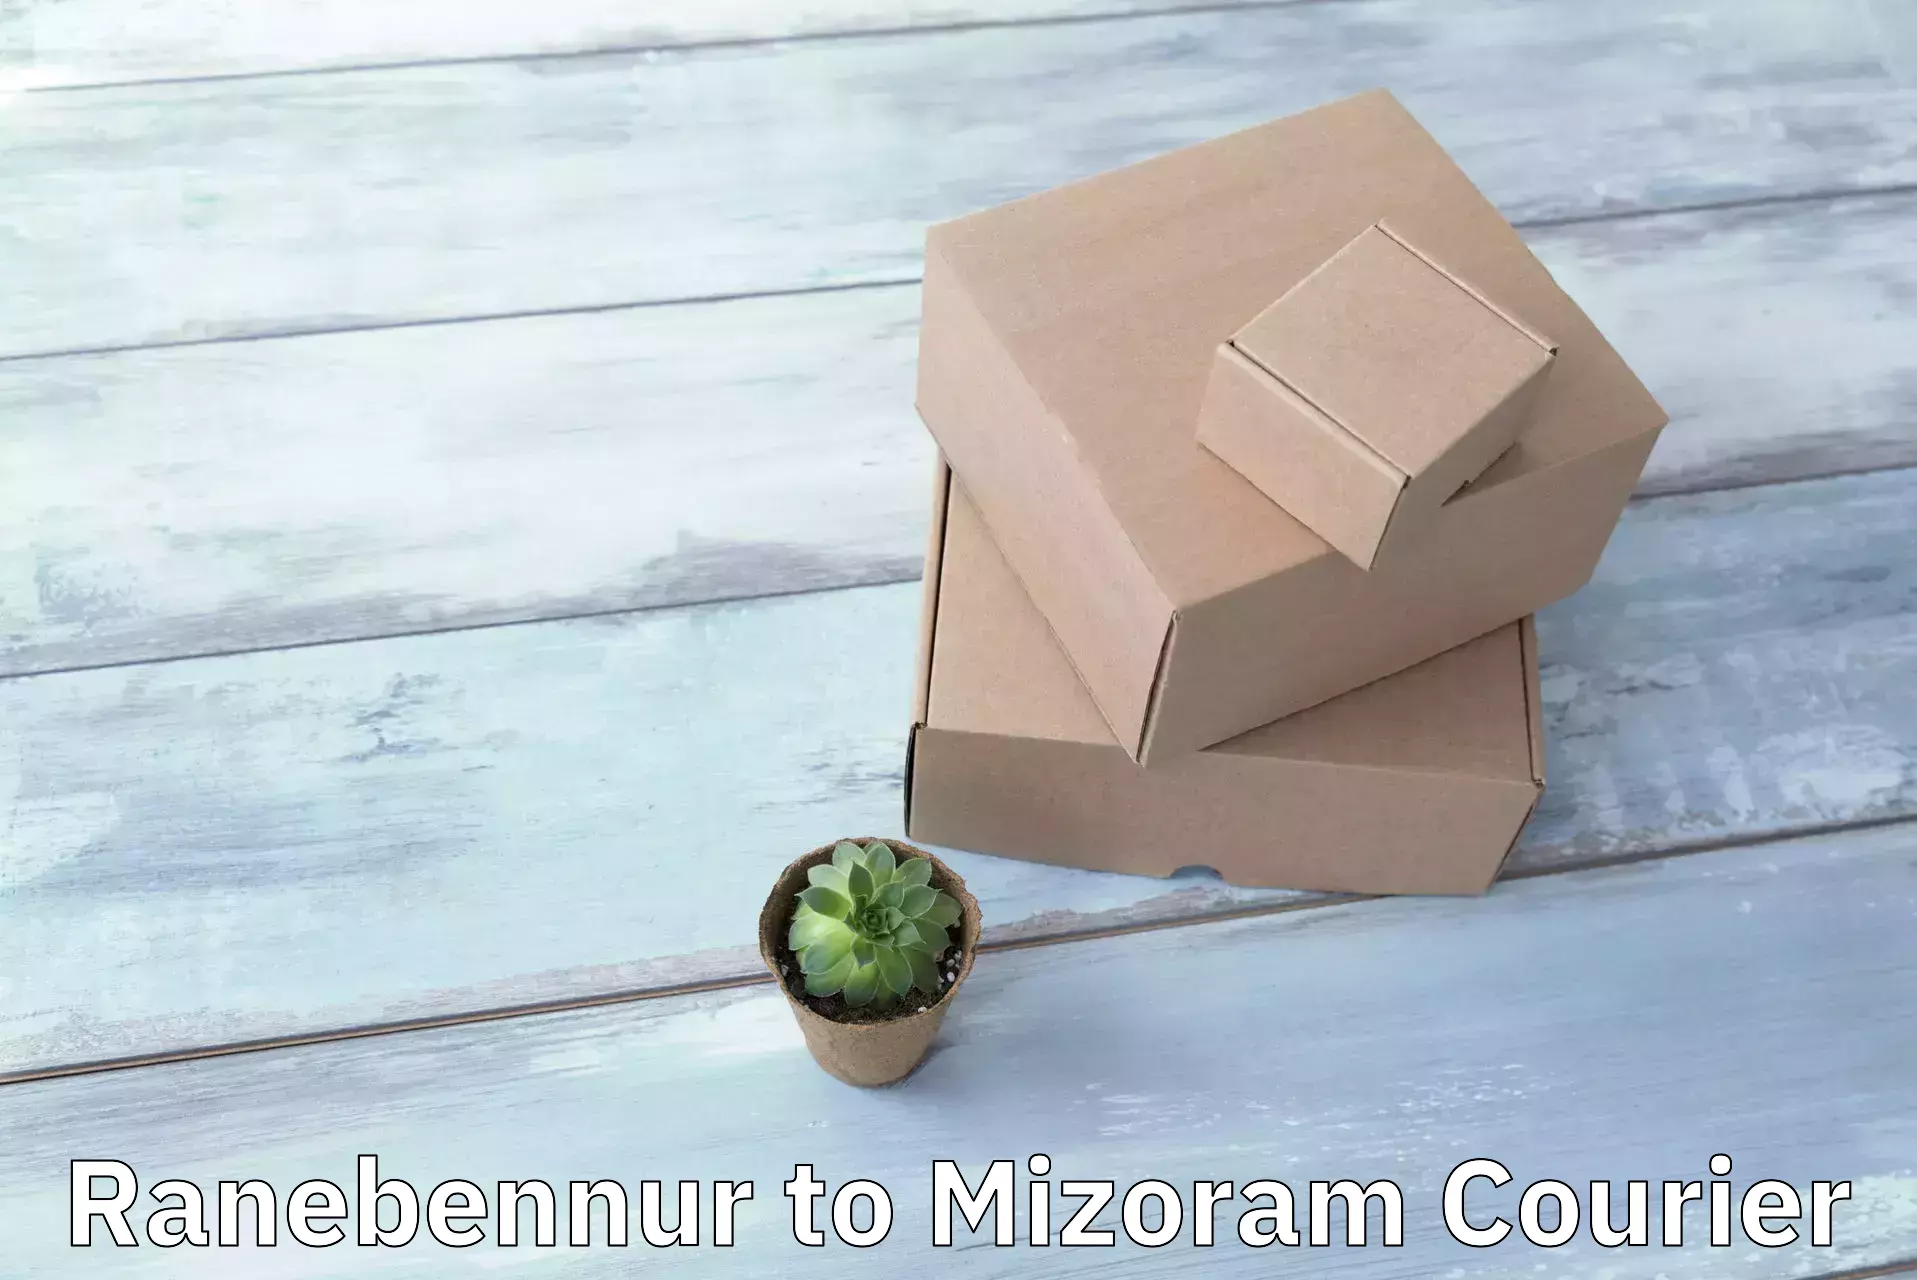 On-demand courier Ranebennur to Mizoram